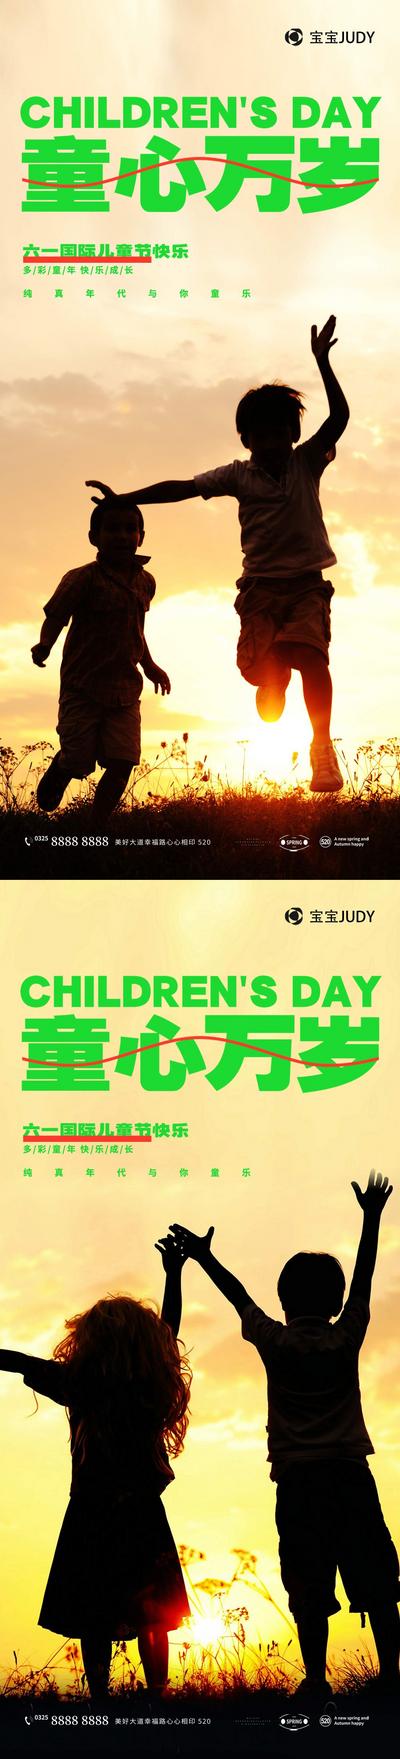 南门网 地产 节日 孩子 儿童节 6.1 刷屏 清新 时尚 剪影 系列